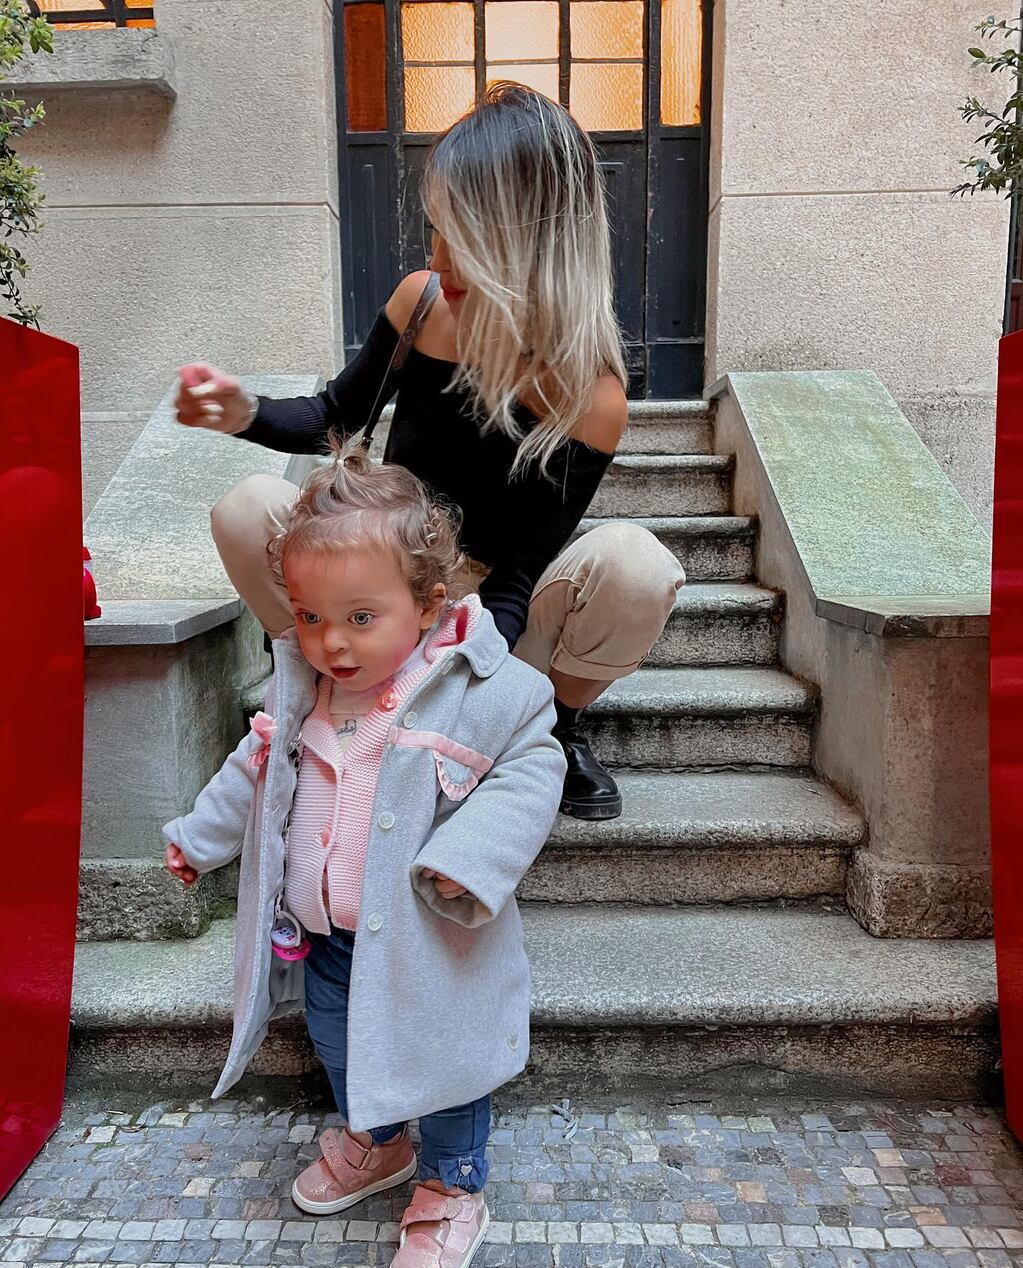 El "Instagram vs realidad" de Agustina Gandolfo y su hija Nina.